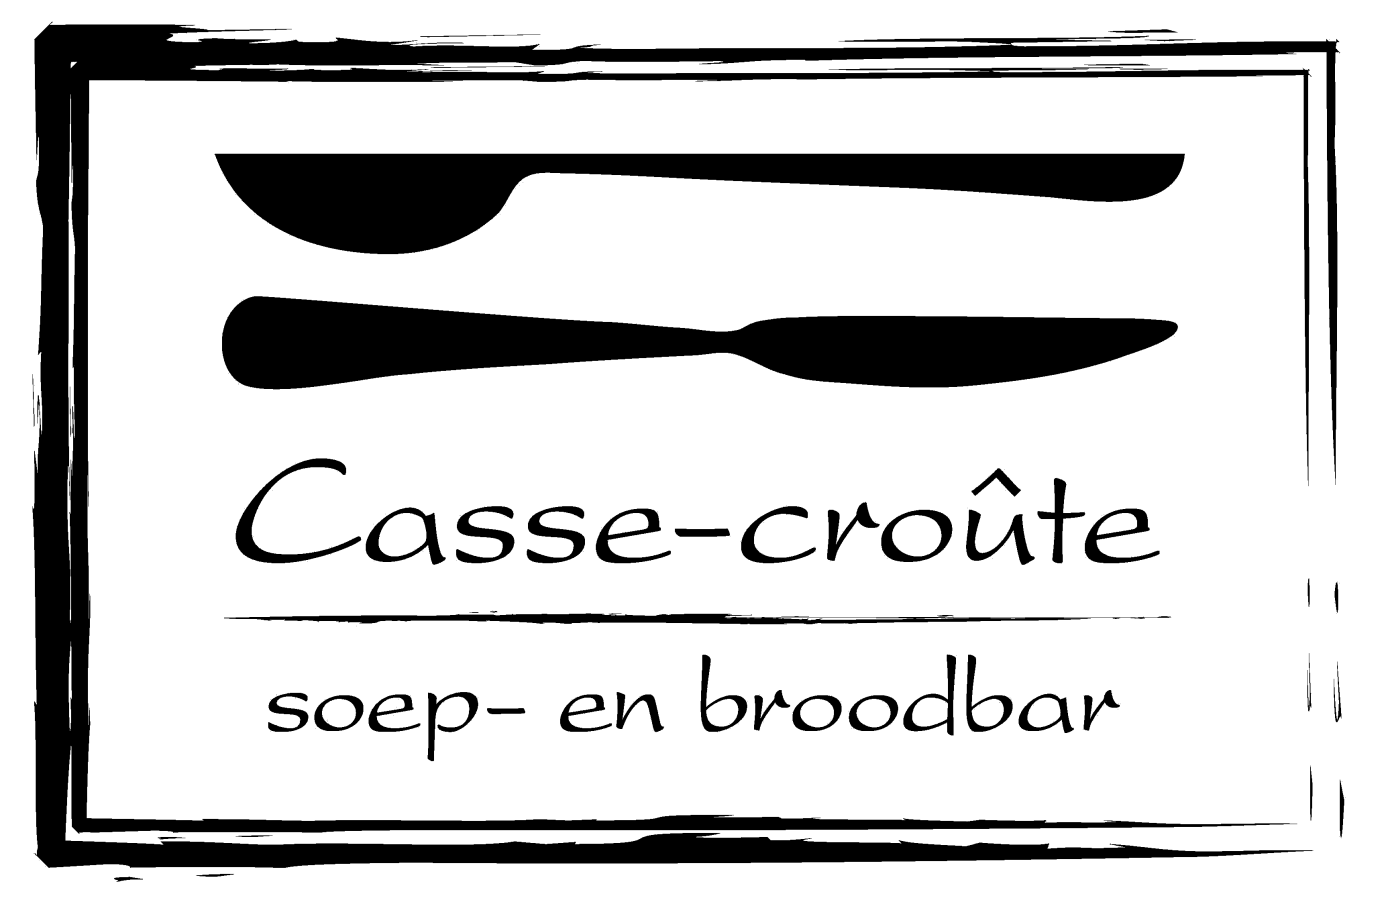 Maak ook kennis met onze soep- en broodbar: Soeprestaurant Casse -